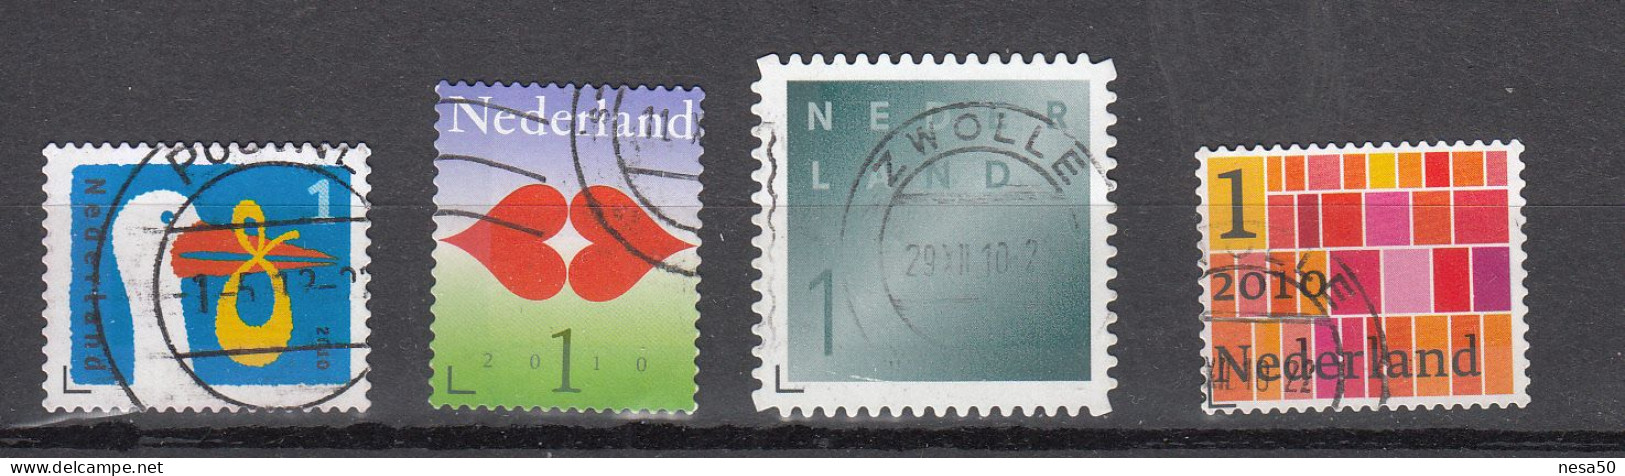 Nederland 2010 Nvph Nr 2744 - 2747, Mi Nr 2756 - 2758, Geboortezegel, Liefde, Rouw + Zakenpostzegel - Used Stamps